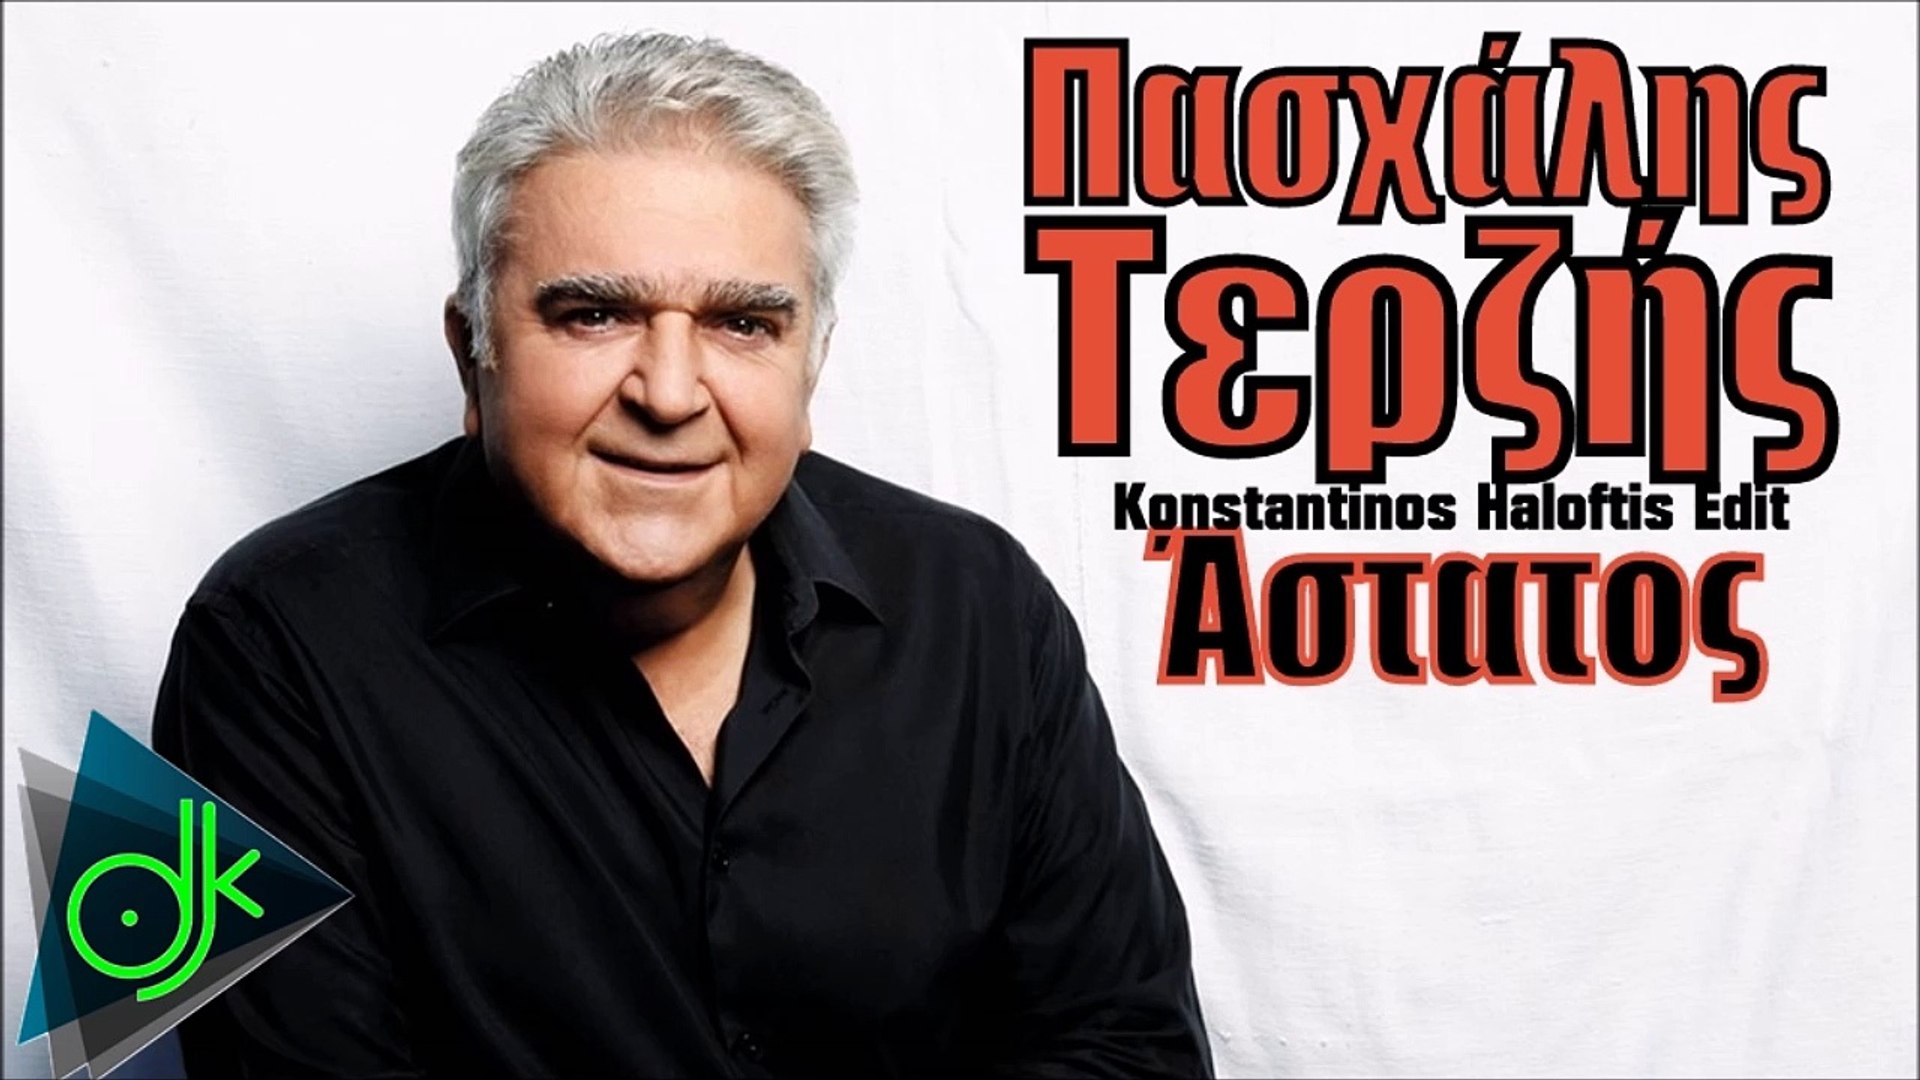 Πασχάλης Τερζής - Άστατος (Konstantinos Haloftis Edit) - video Dailymotion